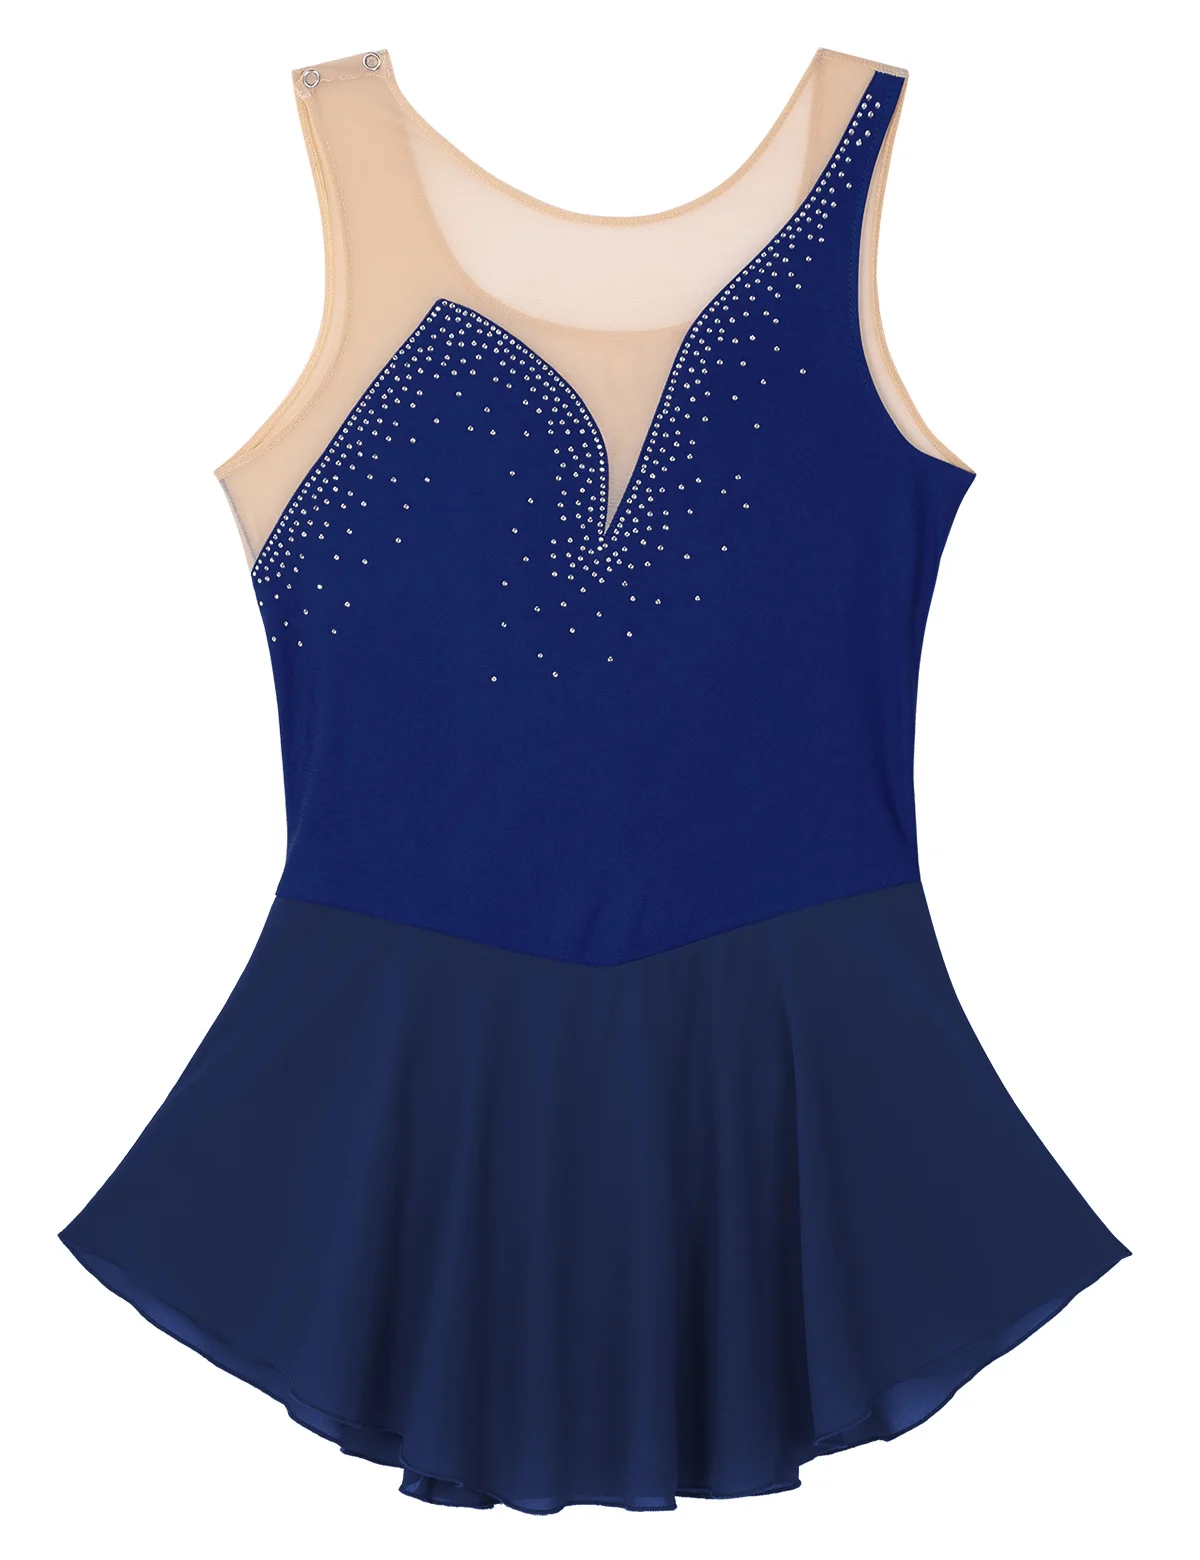 Для женщин Взрослый фигурное катание платье из сетчатой ткани, с лифом с блестящими фигурка из стразов для катания на коньках, Одежда для танцев, платье, гимнастический купальник - Color: Navy Blue